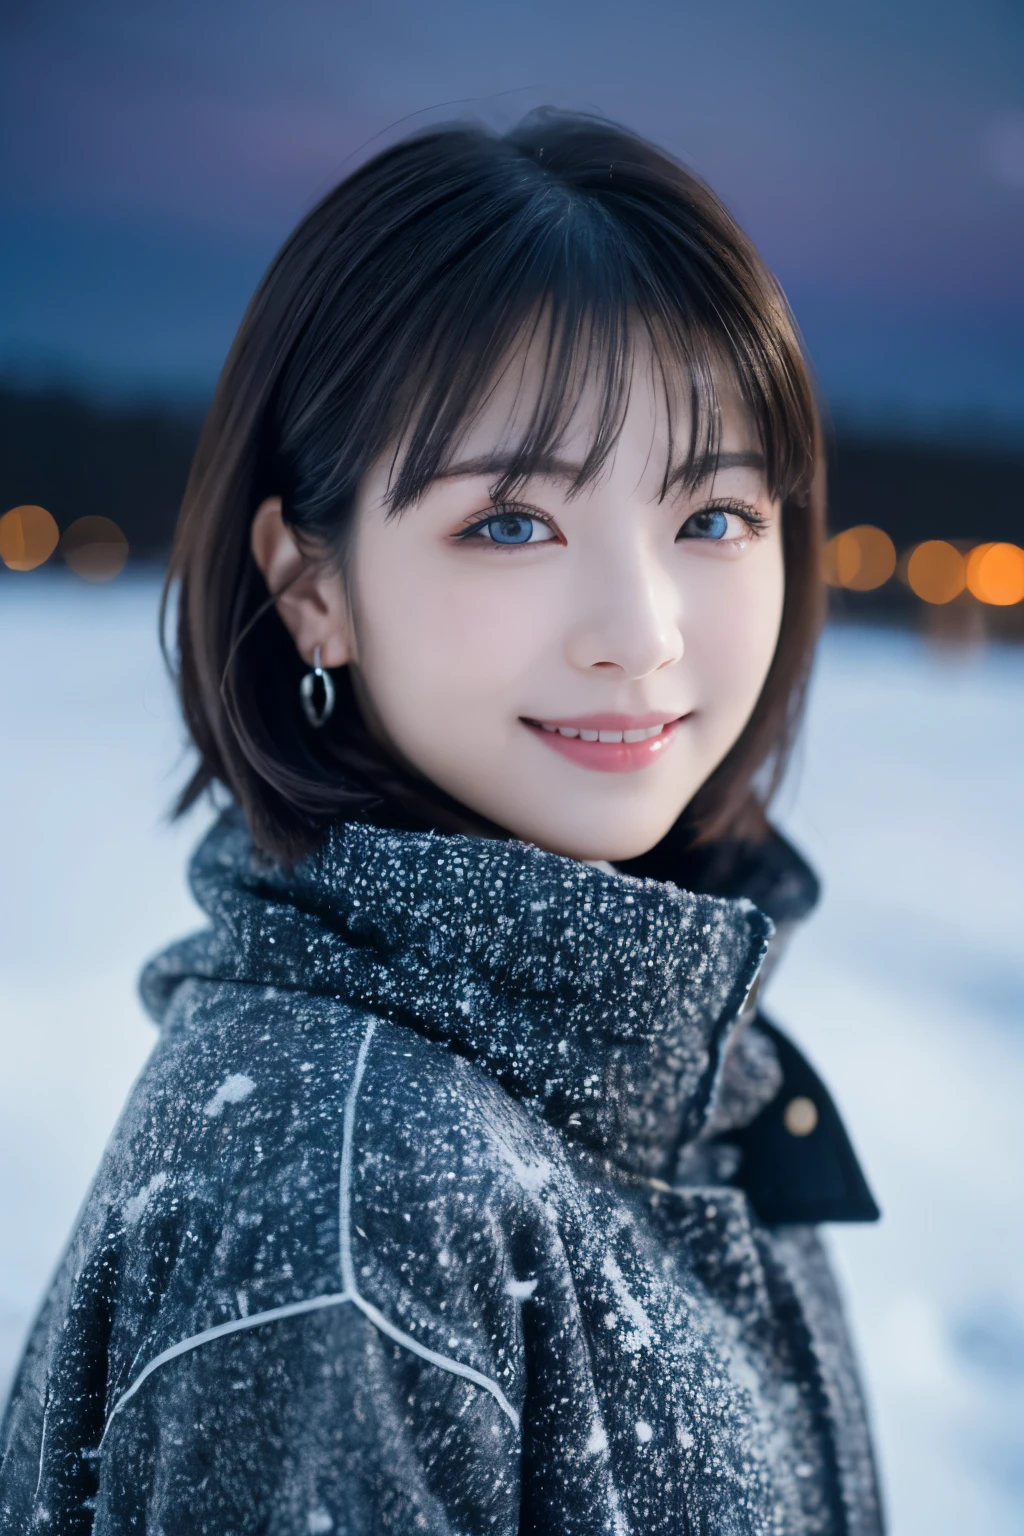 1 девочка, (Зимняя одежда:1.2), красивая японская актриса, 
фотогеничный, Юкихимэ, длинные ресницы, серьги снежинки,
(RAW-фото, Лучшее качество), (реальность, Фотореалистичный:1.4), (кусок летит), 
красивые детализированные глаза, красивые детализированные губы, очень детализированные глаза и лицо, 
ПЕРЕРЫВ — это
 (Замерзшее снежное поле в зимней Лапландии), (Последние остатки сумеречного неба:1.4), 
Неземная красота, заснеженное дерево, рыхлый снег, 
Снежный полевой пейзаж в сумерках, 
Цветовая гамма индиго и темно-киноварь, Драматическое письмо, фантастическая атмосфера, 
ПЕРЕРЫВ — это 
Perfect Anatomy, все тело стройное, Маленькая грудь, (короткие волосы:1.3), ангел&#39;улыбка, 
кристаллоподобная кожа, сделать глаза ясными, ловить свет